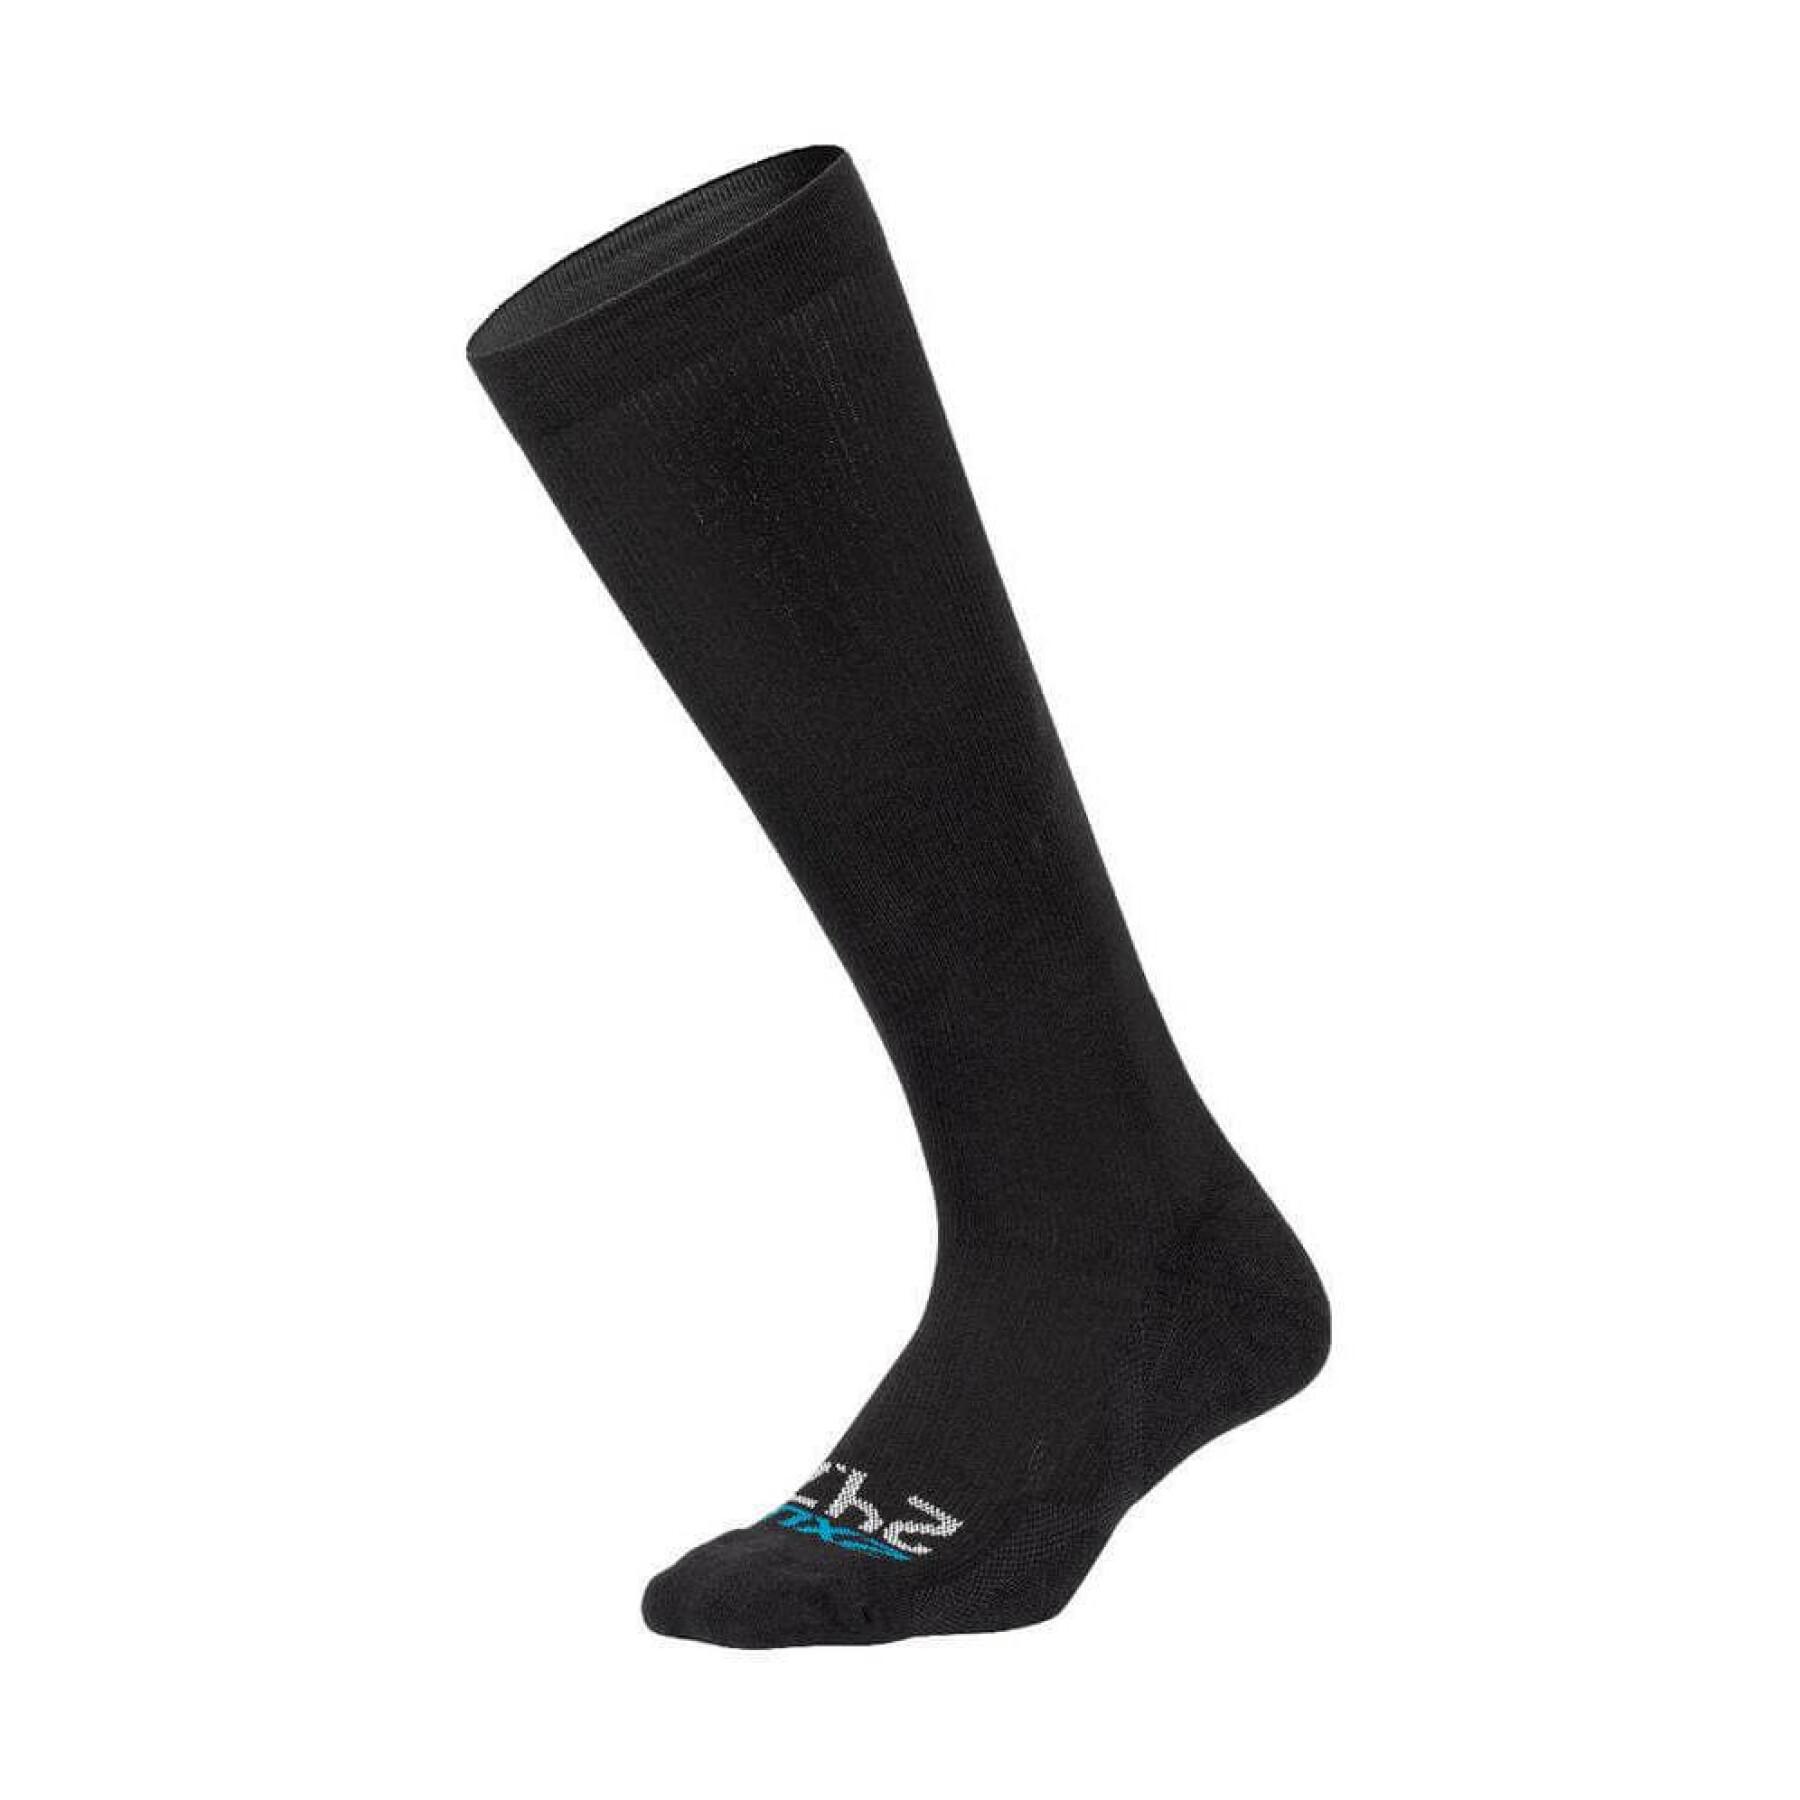 24/7 compression socks 2XU